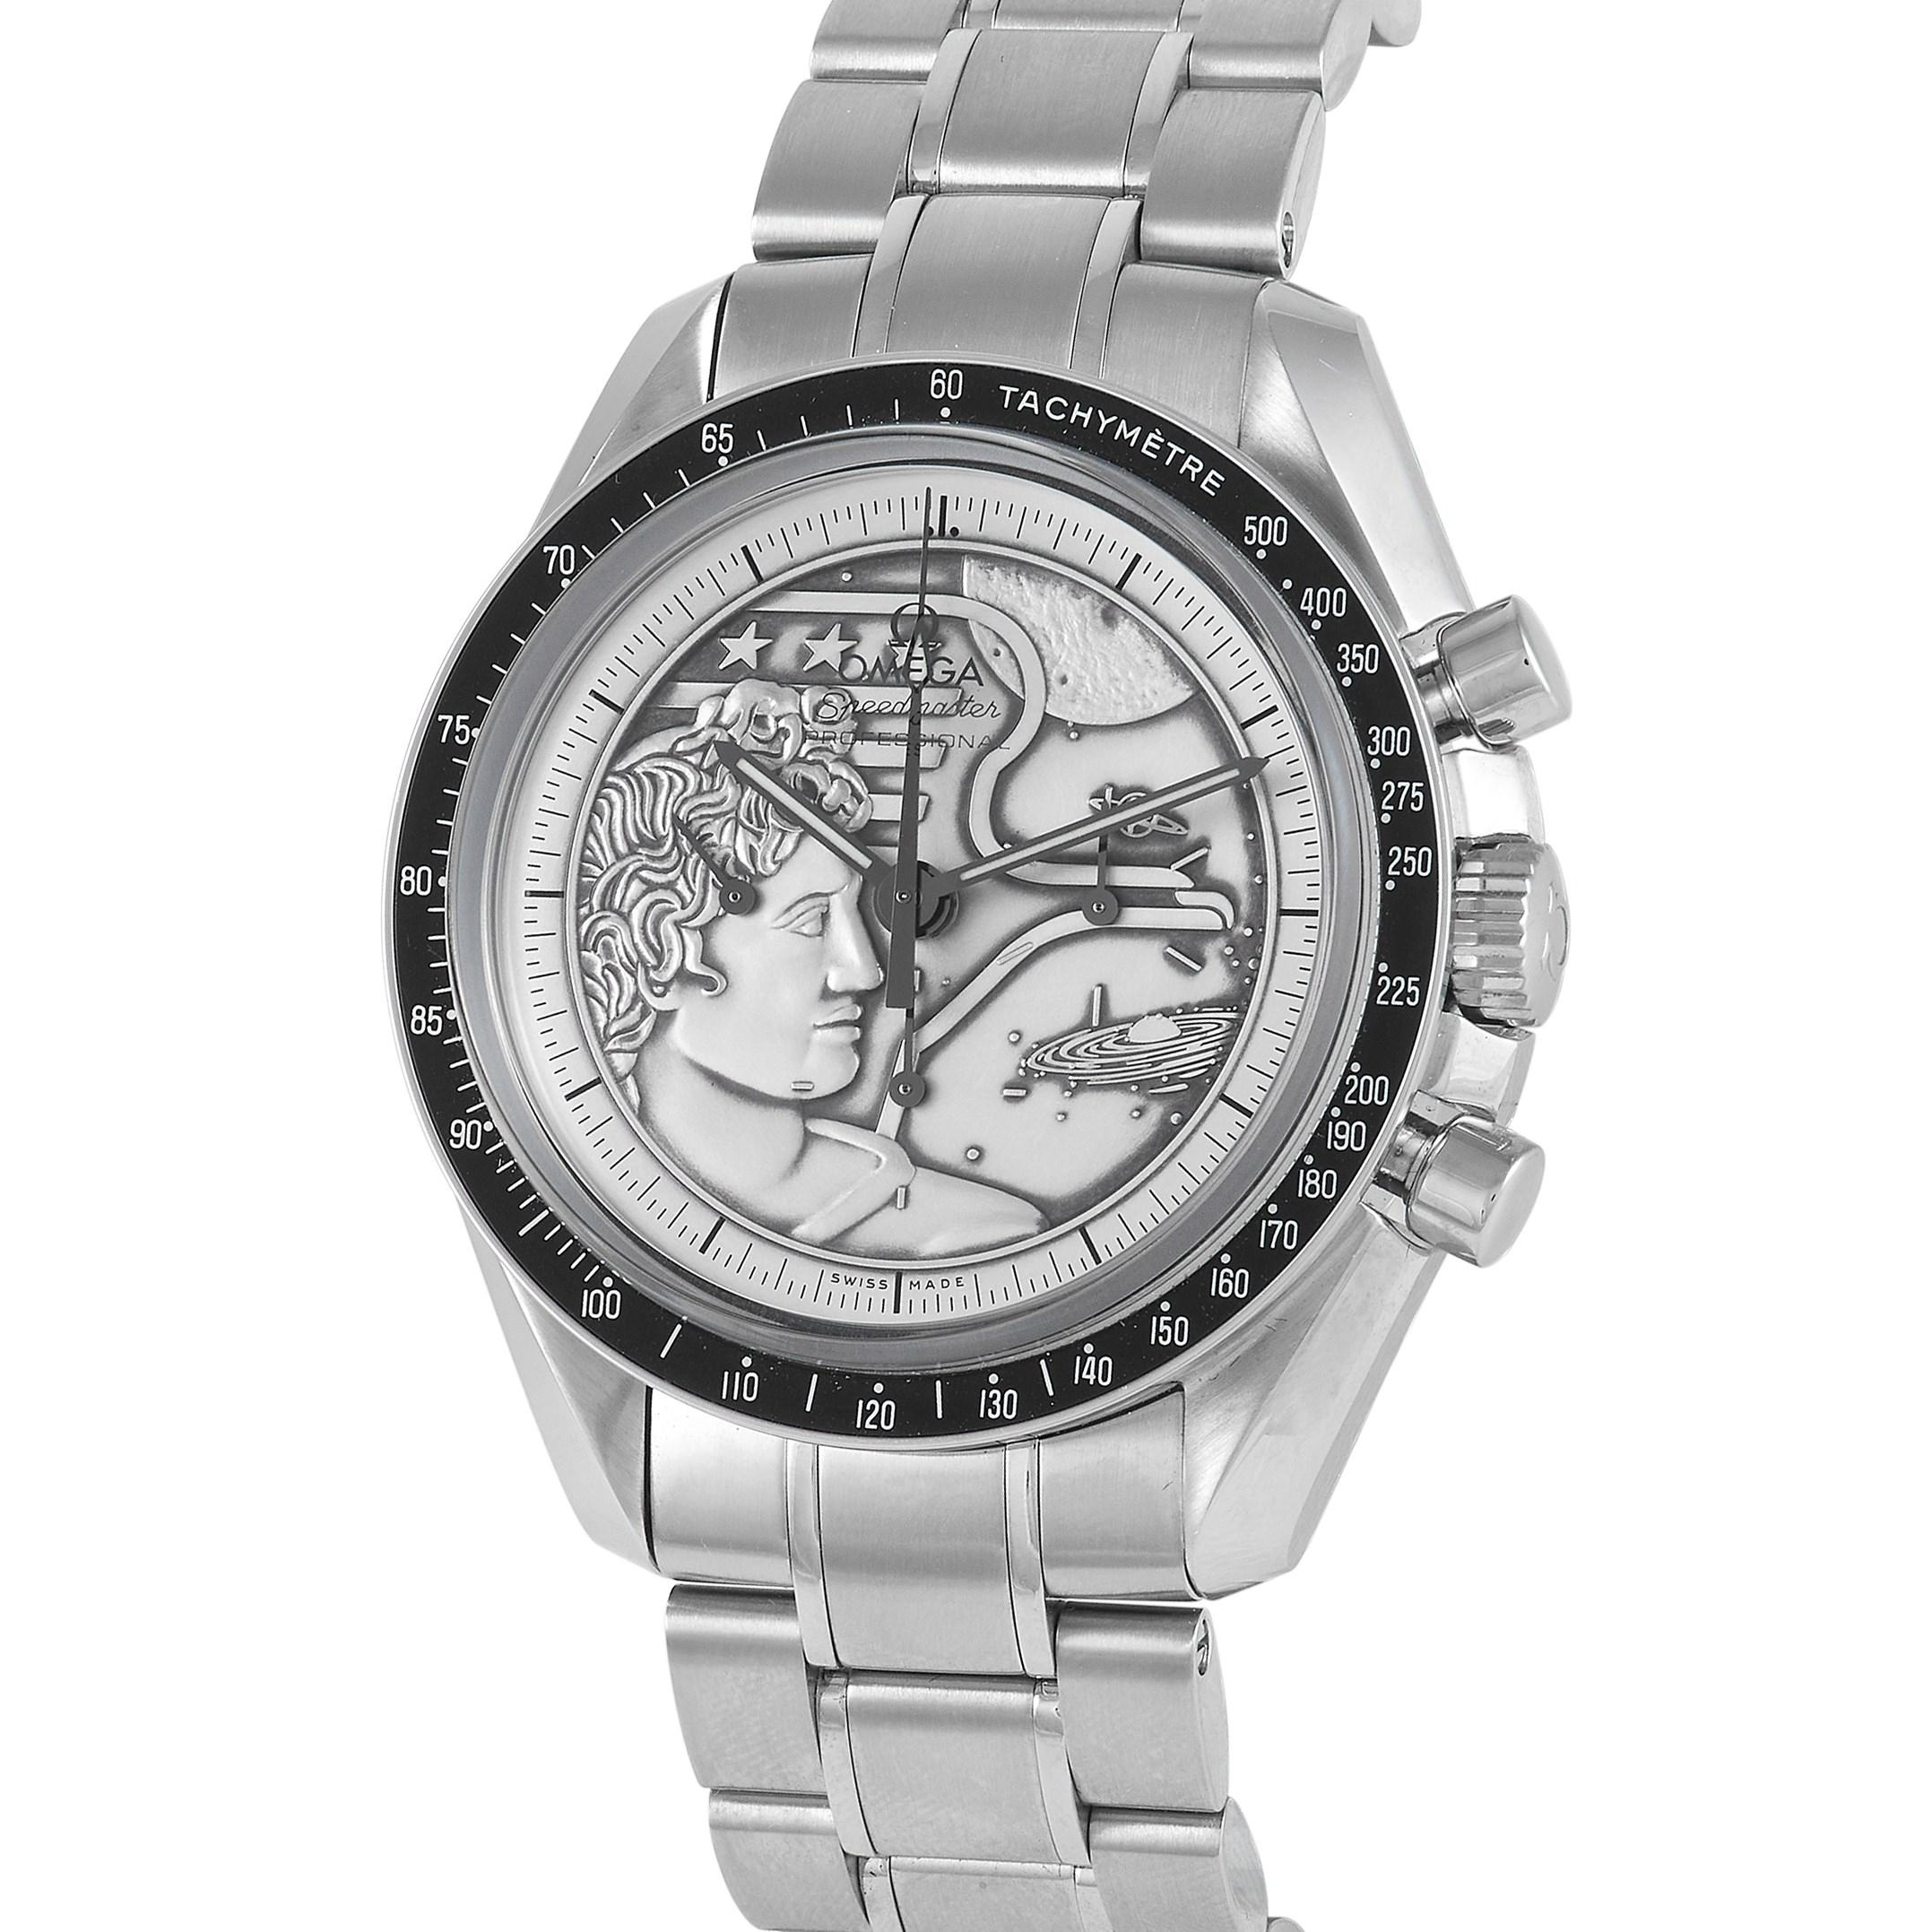 Zu Ehren des 40. Jahrestages der Apollo XVII brachte OMEGA diese außergewöhnliche Moonwatch mit Edelstahlarmband und silbernem Zifferblatt mit Apollo XVII-Patch heraus. Es ist nicht nur ein Zeitmesser, sondern auch ein Gesprächsanlass. Diese